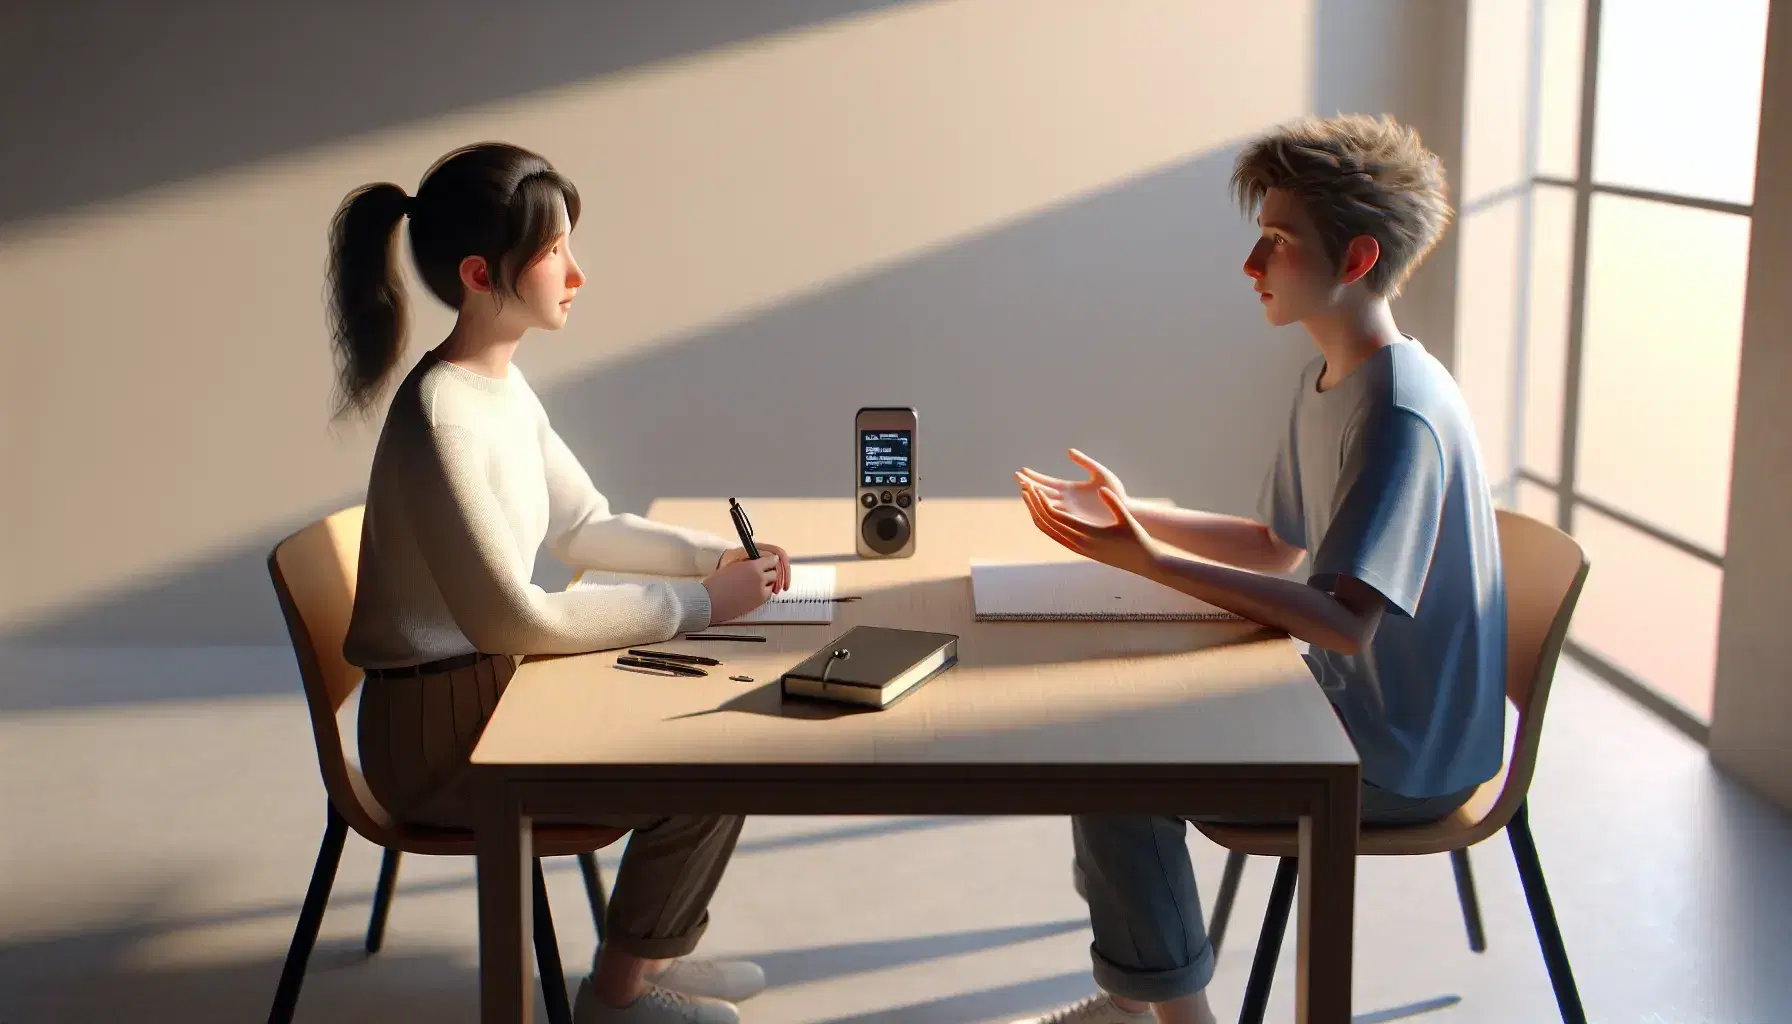 Dos personas sentadas frente a frente en una entrevista, una con camisa blanca y la otra con camiseta azul, con una grabadora digital sobre la mesa en un ambiente iluminado y tranquilo.